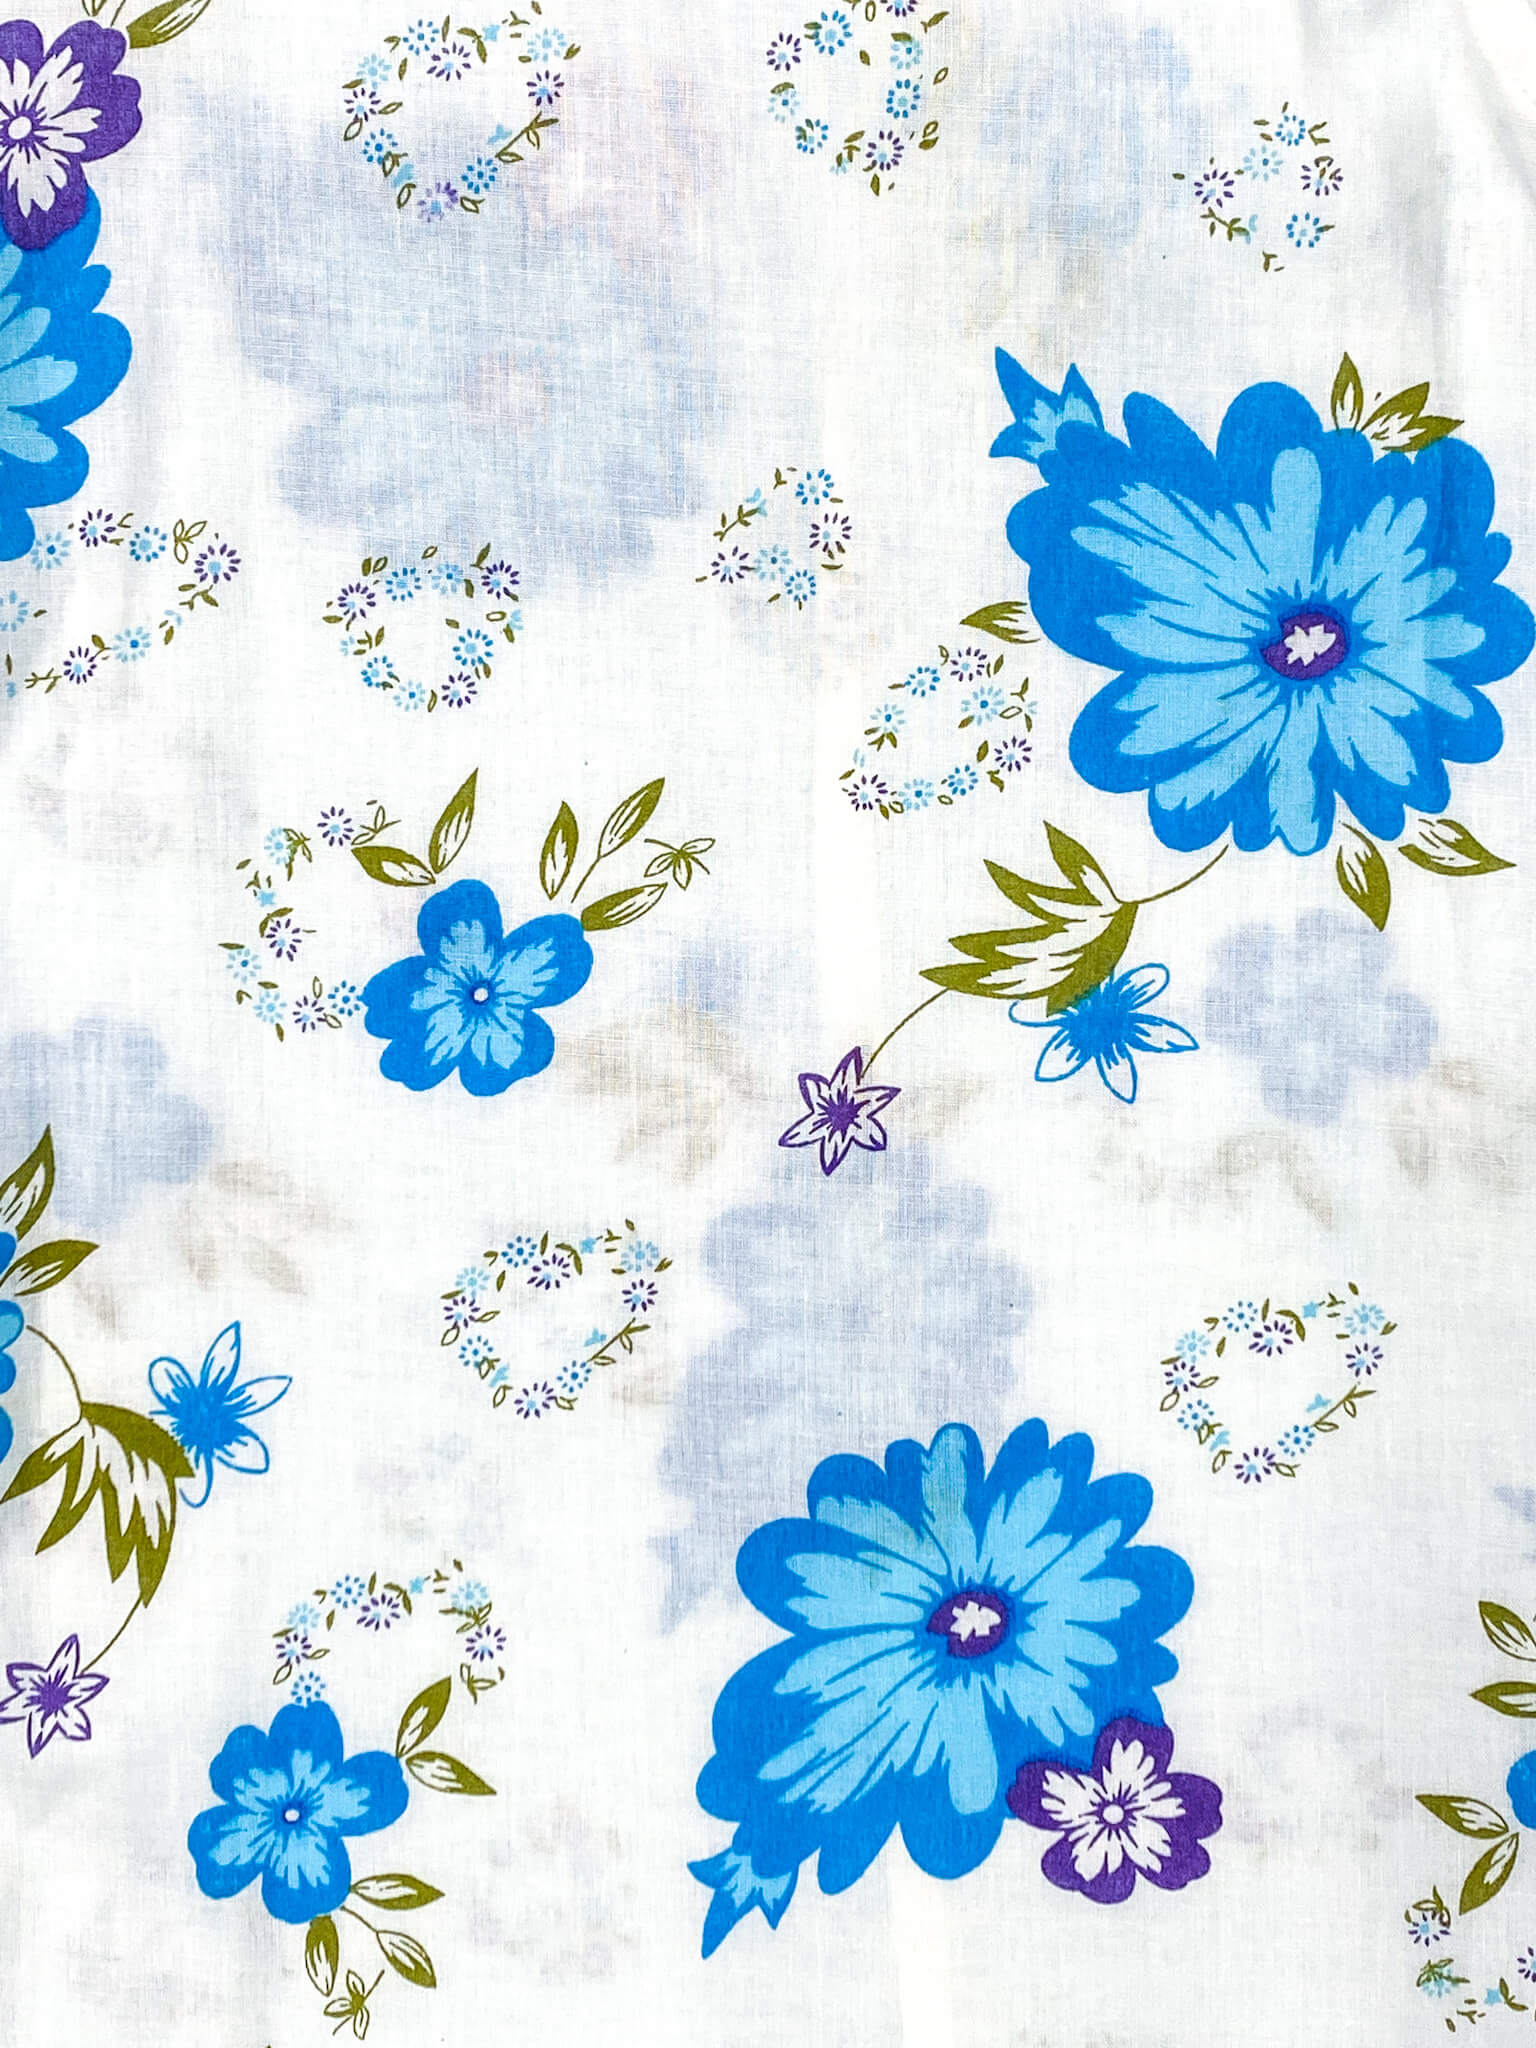 Virgin Floral Cotton Voile Boxer Short - White/Blue